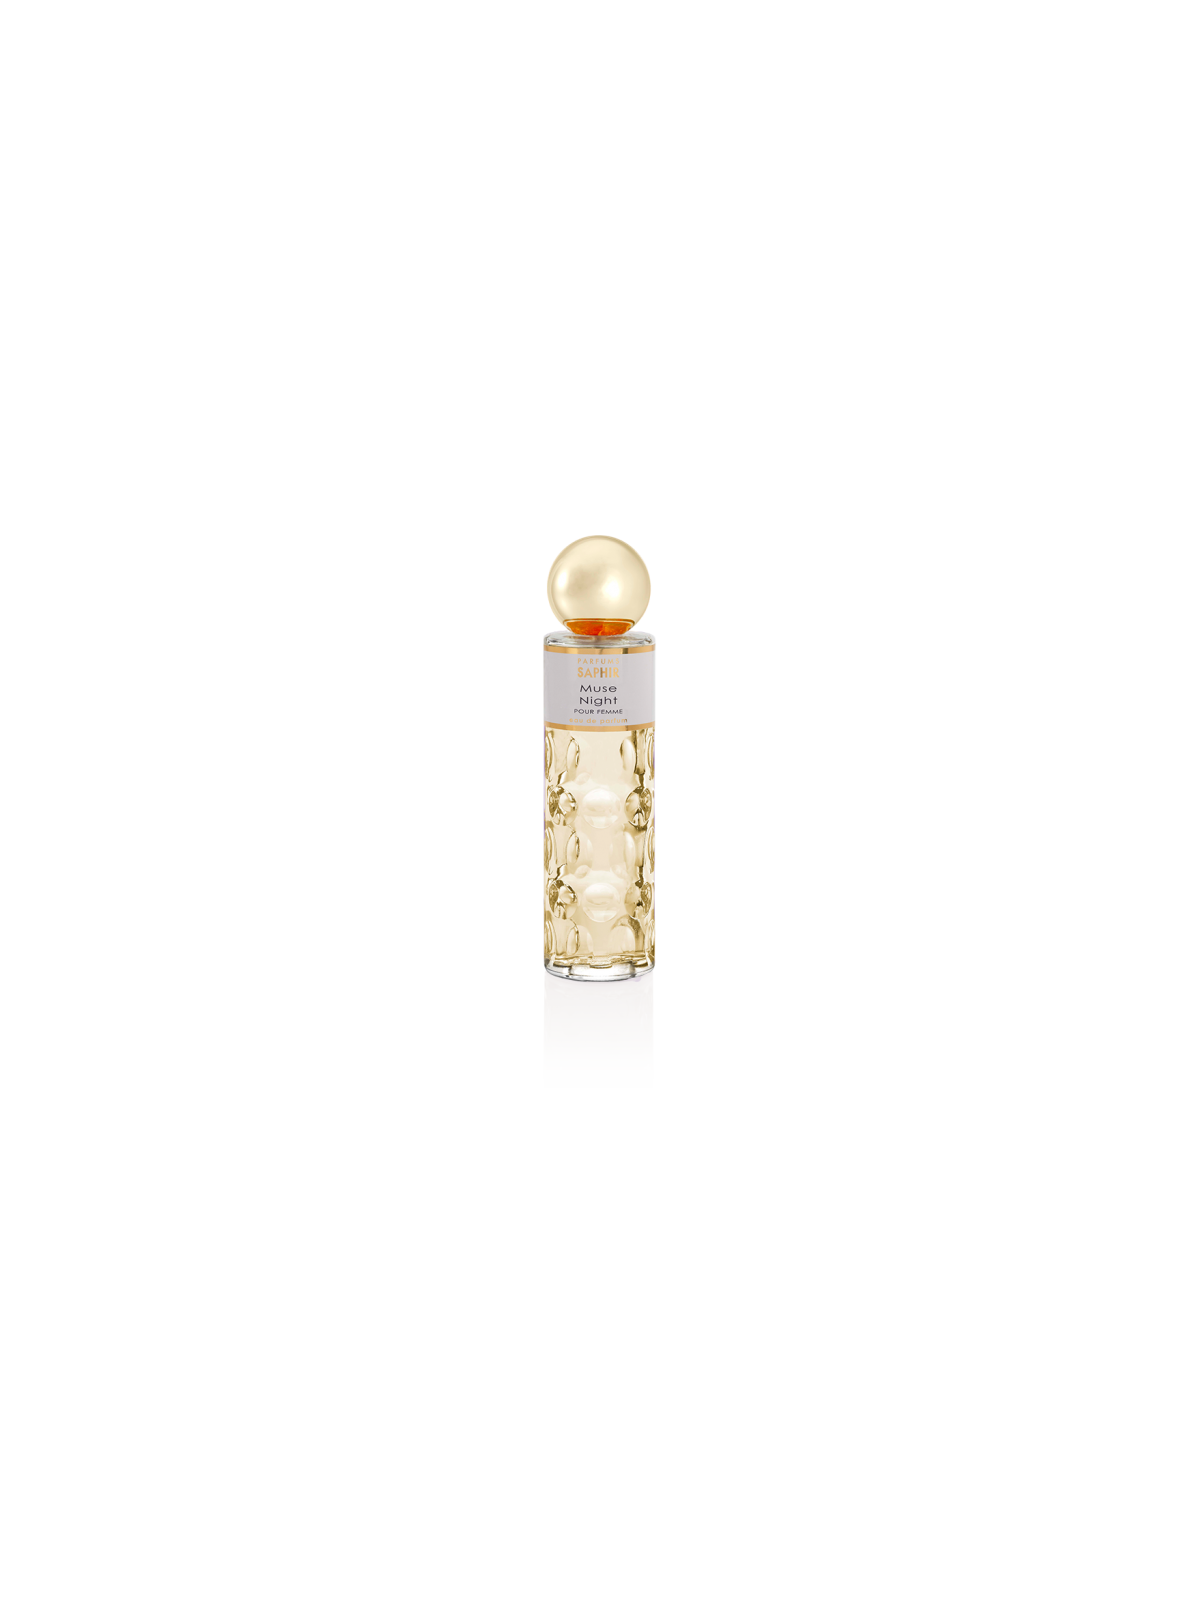 Comprar Perfume SAPHIR Muse Night by Saphir 200ml. en Perfumes para mujer por sólo 12,90 € o un precio específico de 12,90 € en Thalie Care